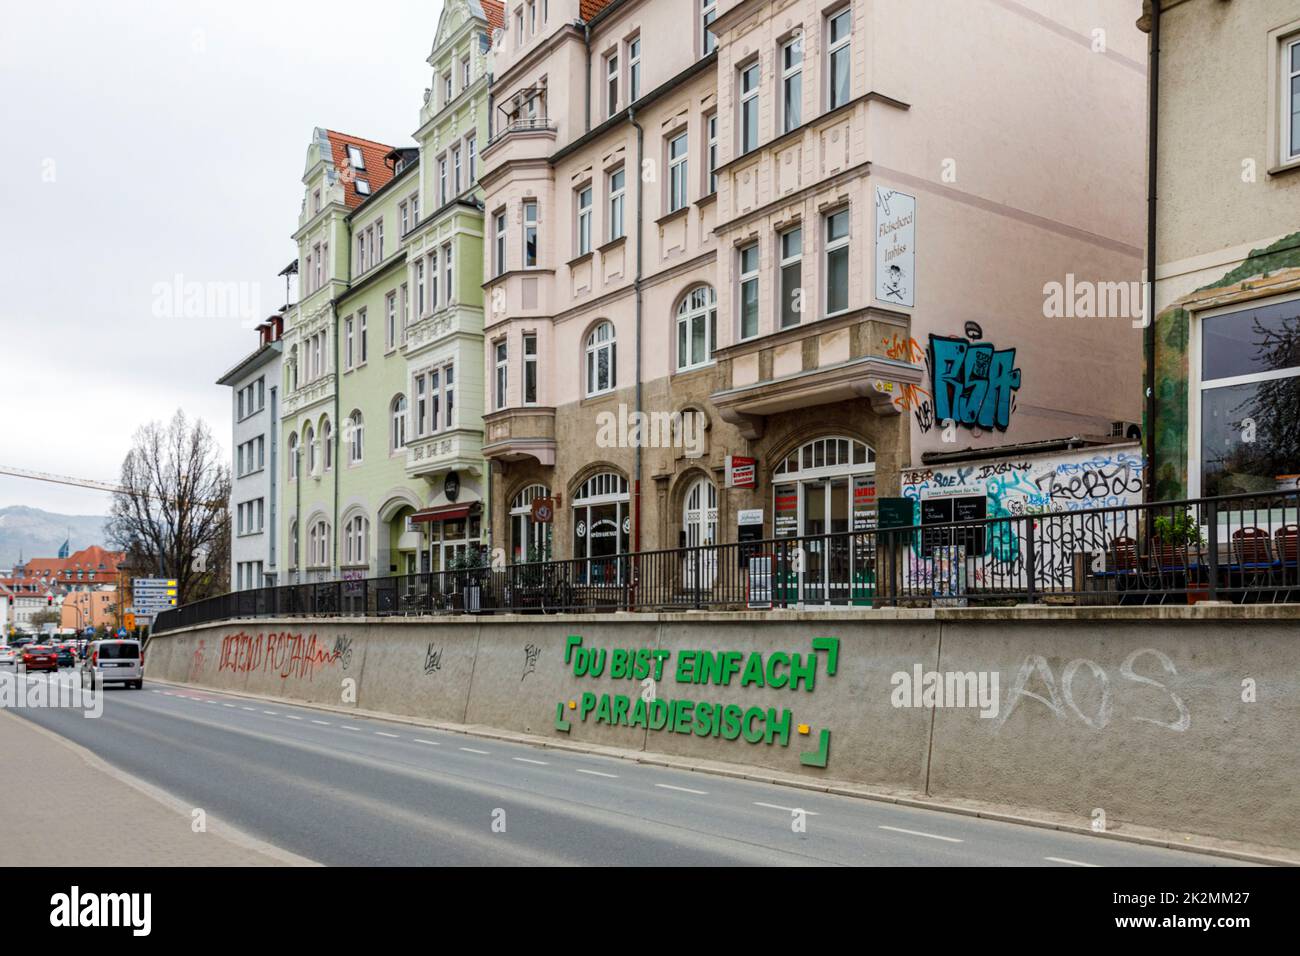 Das „Hohe Trottoire“ in der Westbahnhofstraße mit dem Schriftzug: Du bist einfach paradiesisch, ein danke an die Stadt Jena Foto Stock